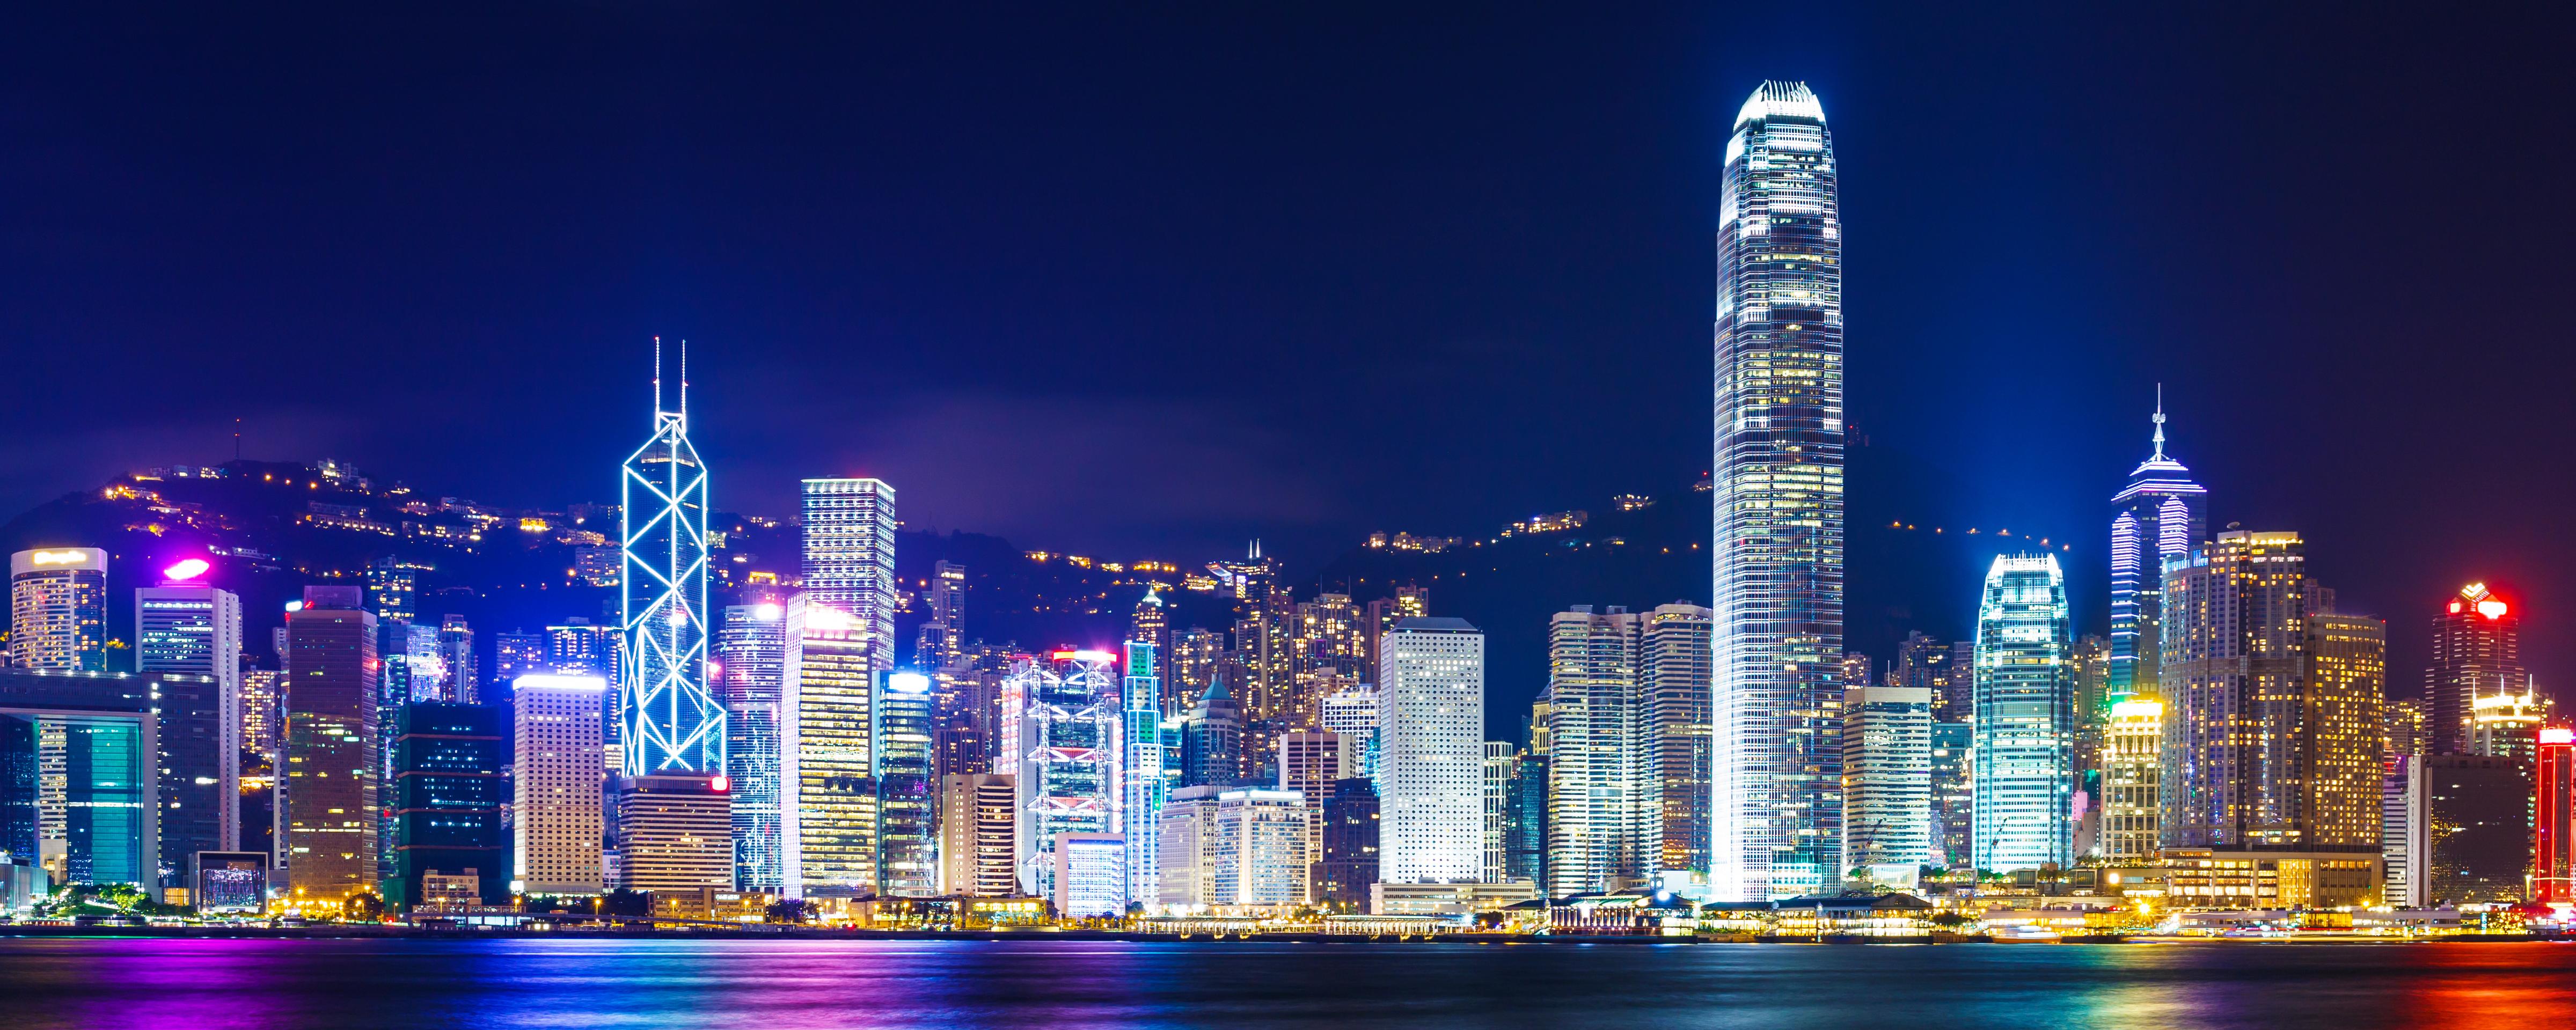 « Symphonie des Lumières » au port Victoria de Hong Kong